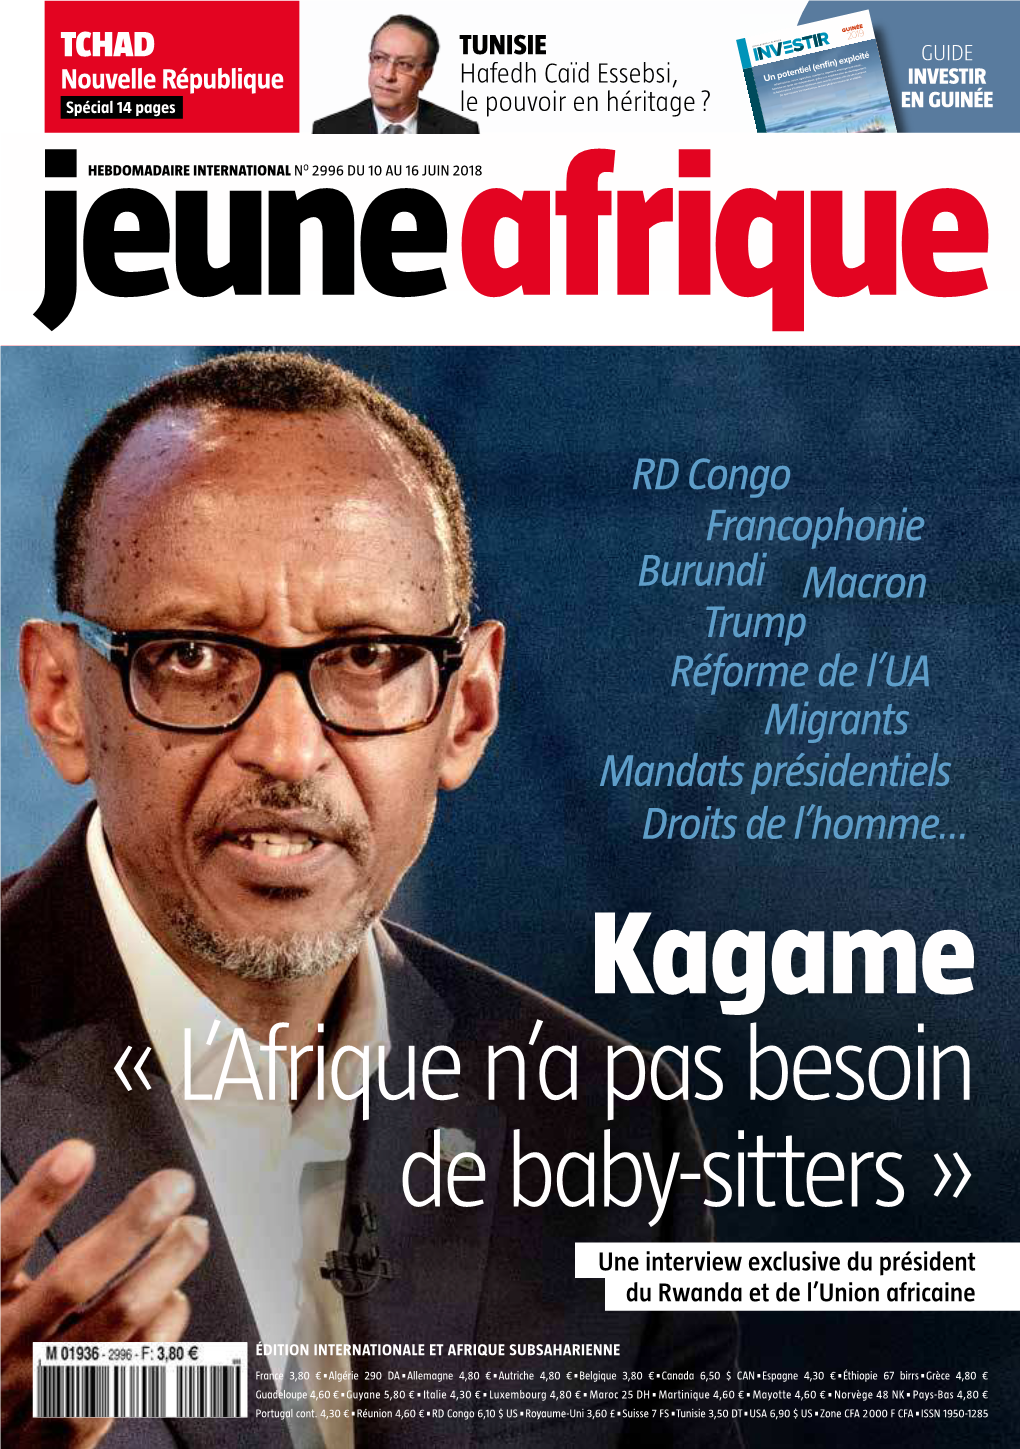 Kagame « L’Afrique N’A Pas Besoin De Baby-Sitters » Une Interview Exclusive Du Président Du Rwanda Et De L’Union Africaine